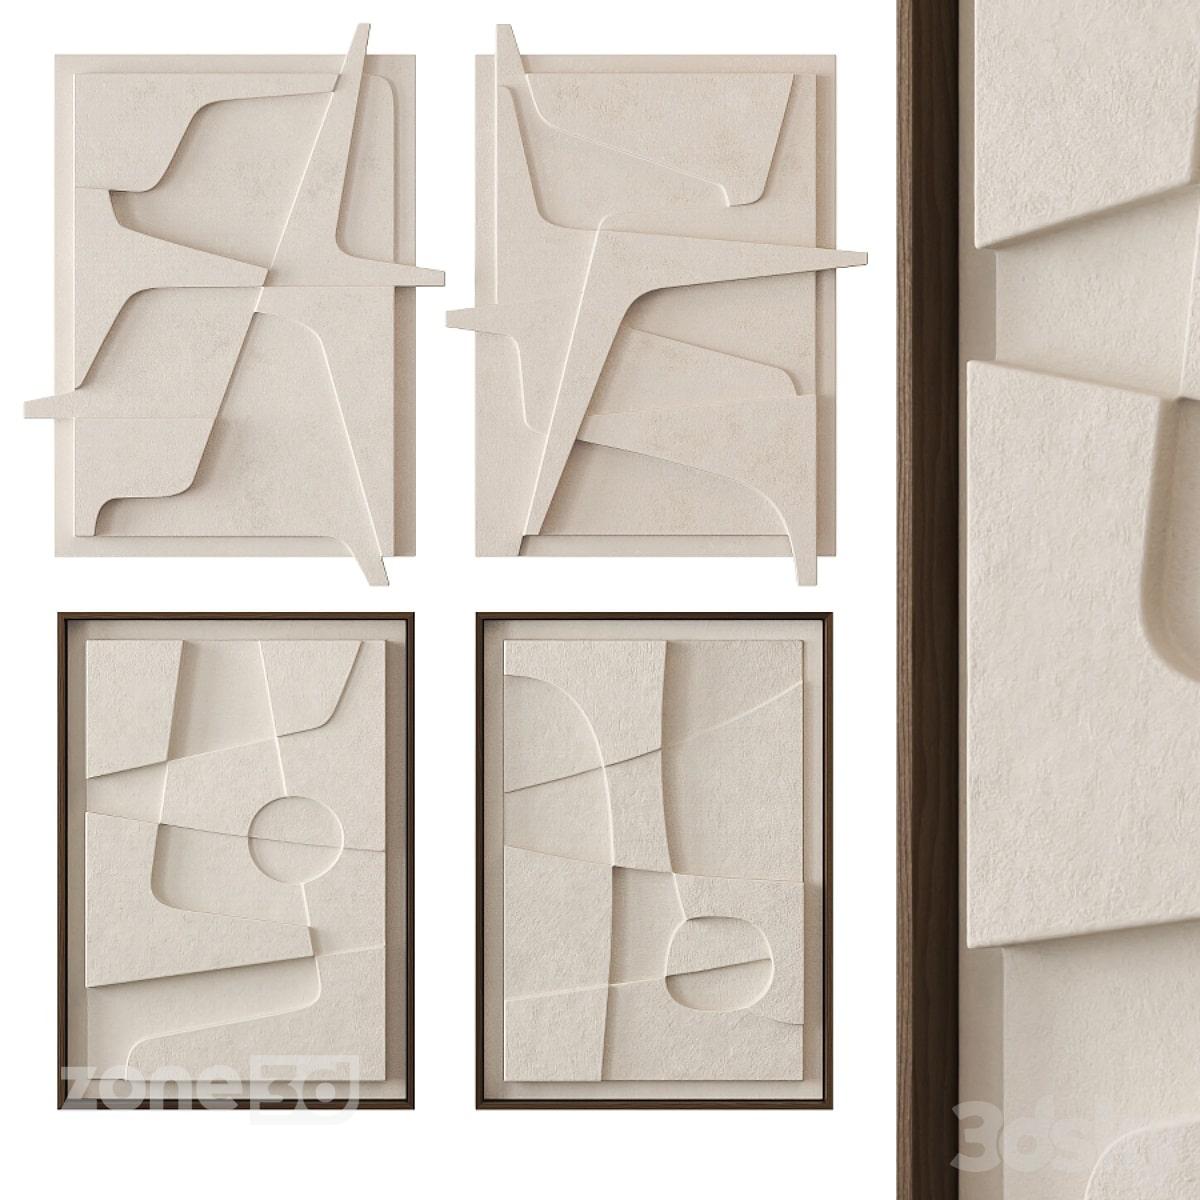 آبجکت تابلو دکوراتیو سه بعدی دیواری گچی با فریم چوبی مدل Atelier Plateau